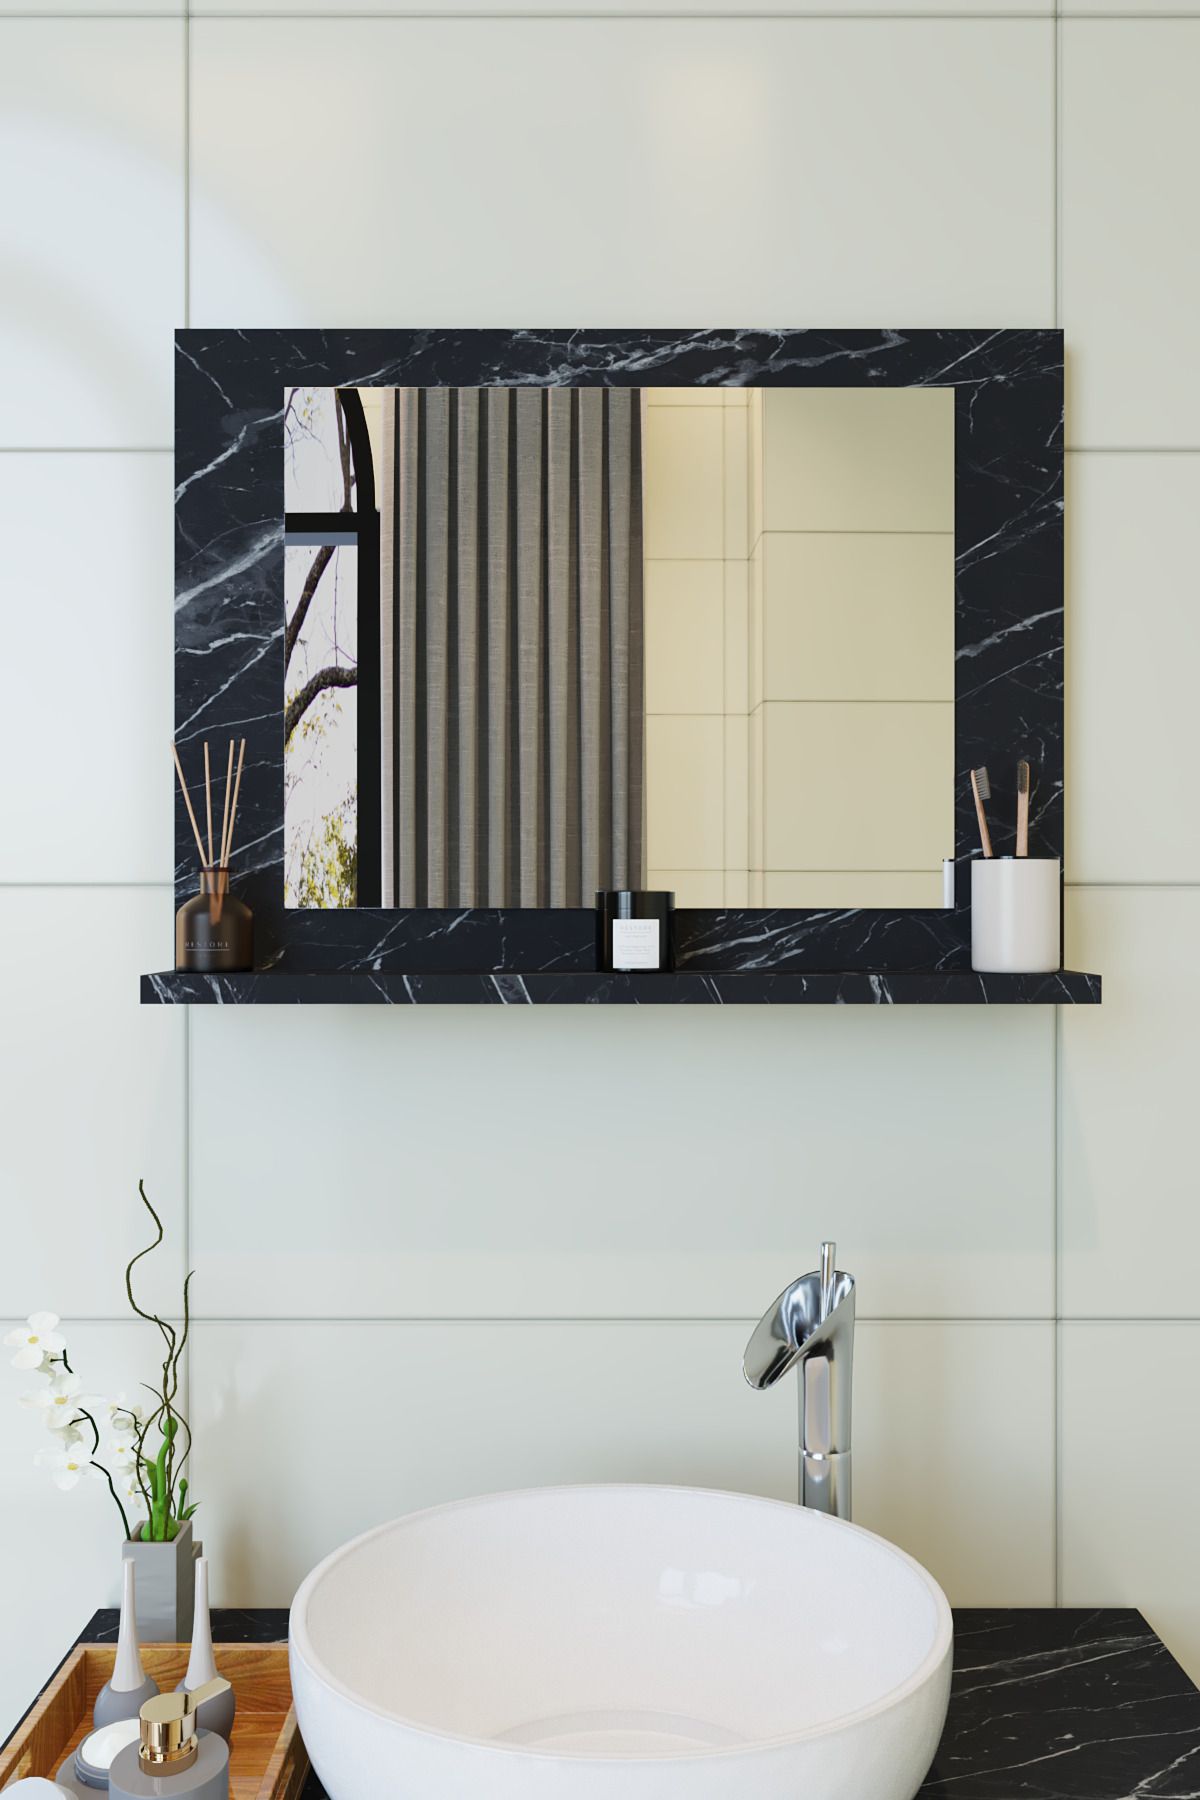 makbulce Yakut Dresuar,60x45 Mermer Raflı Banyo Aynası